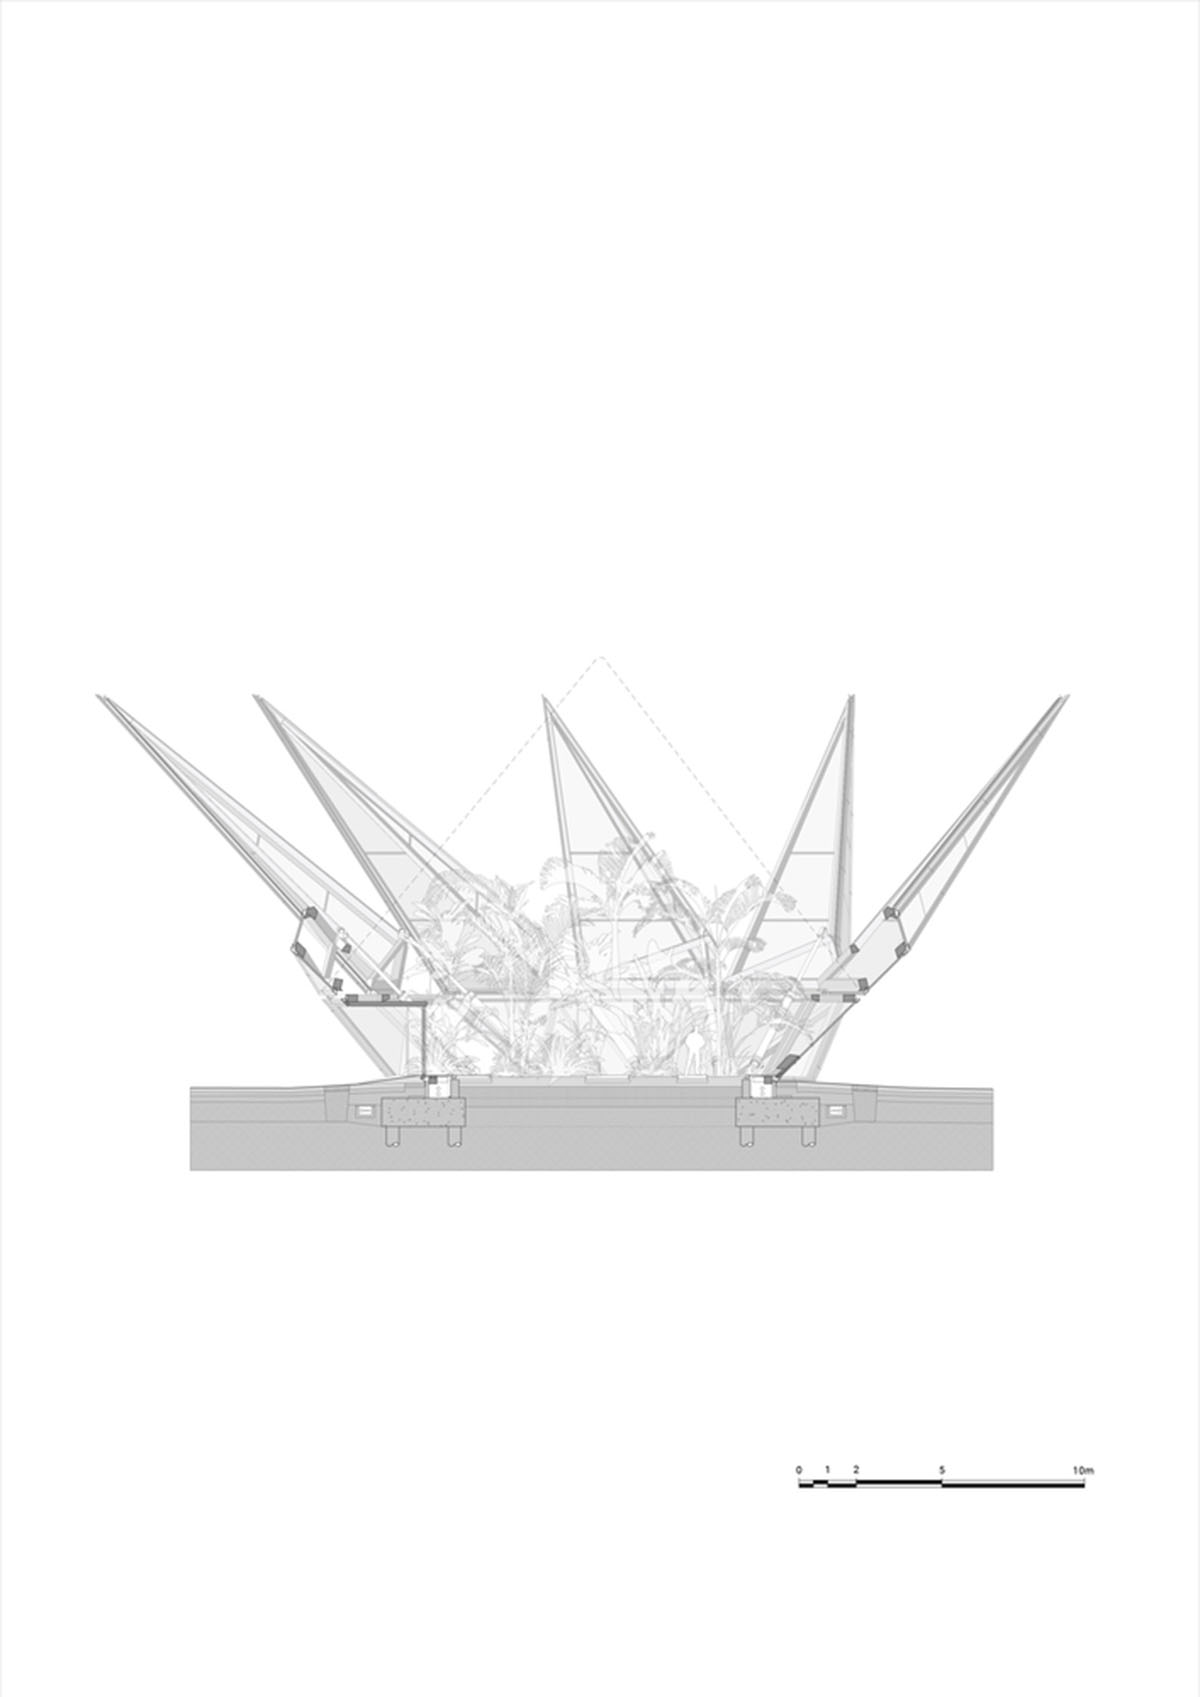 Студия Heatherwick проектирует кинетическую теплицу, похожую на корону, для Национального фонда в Западном Суссексе.